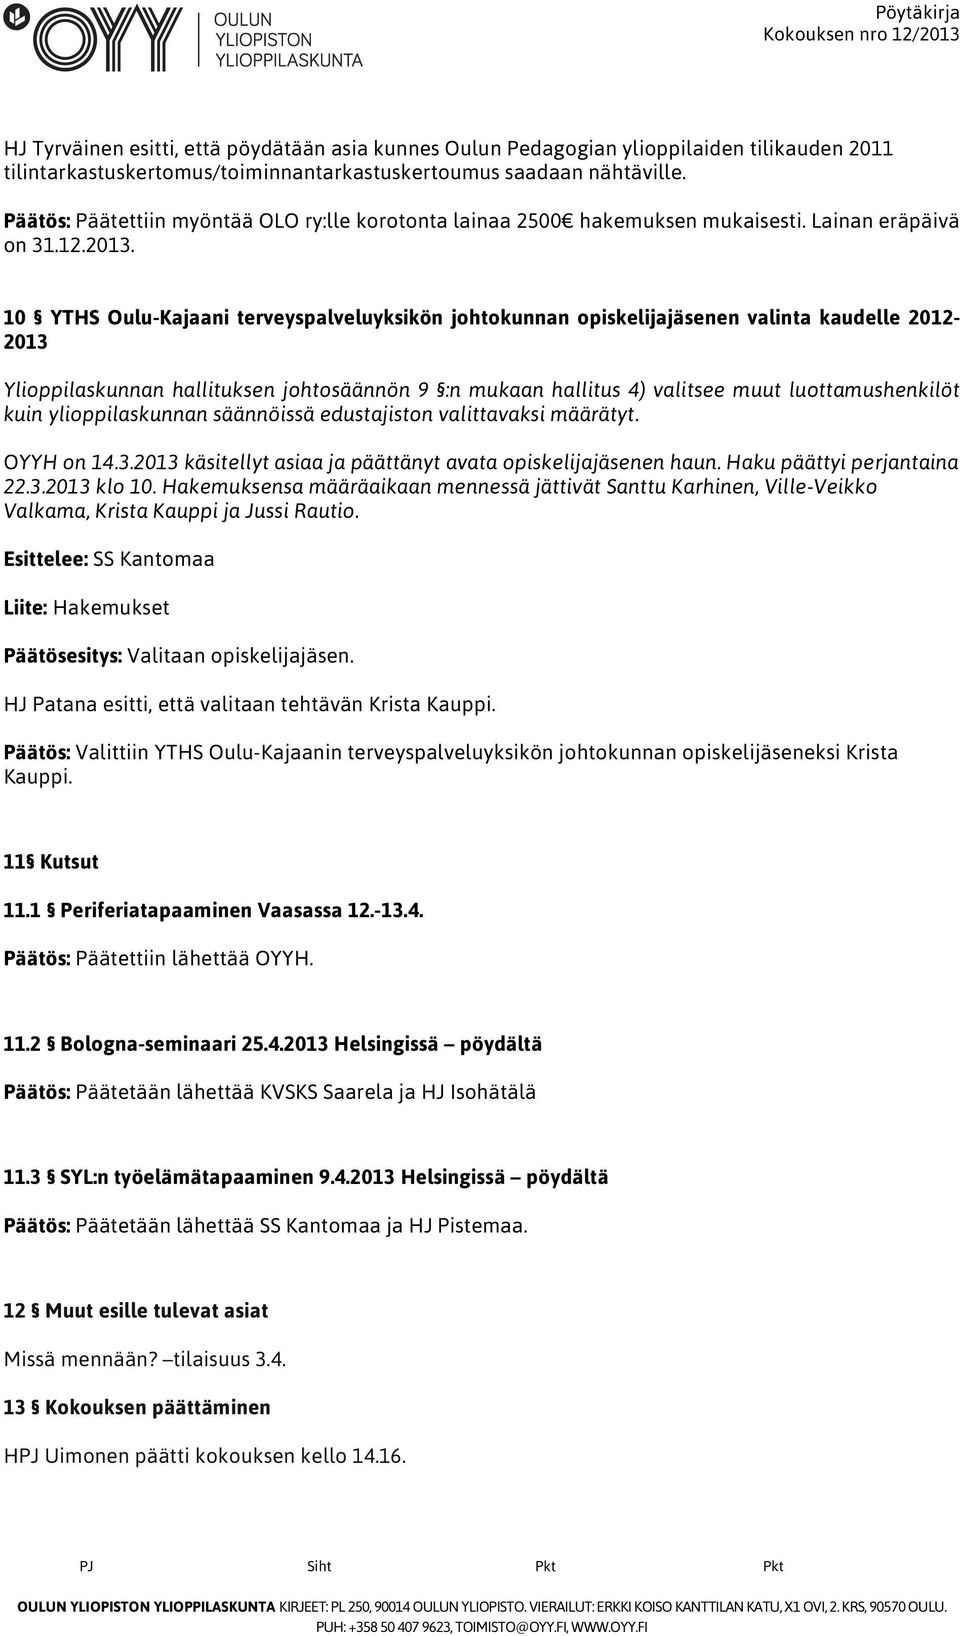 10 YTHS Oulu-Kajaani terveyspalveluyksikön johtokunnan opiskelijajäsenen valinta kaudelle 2012-2013 Ylioppilaskunnan hallituksen johtosäännön 9 :n mukaan hallitus 4) valitsee muut luottamushenkilöt